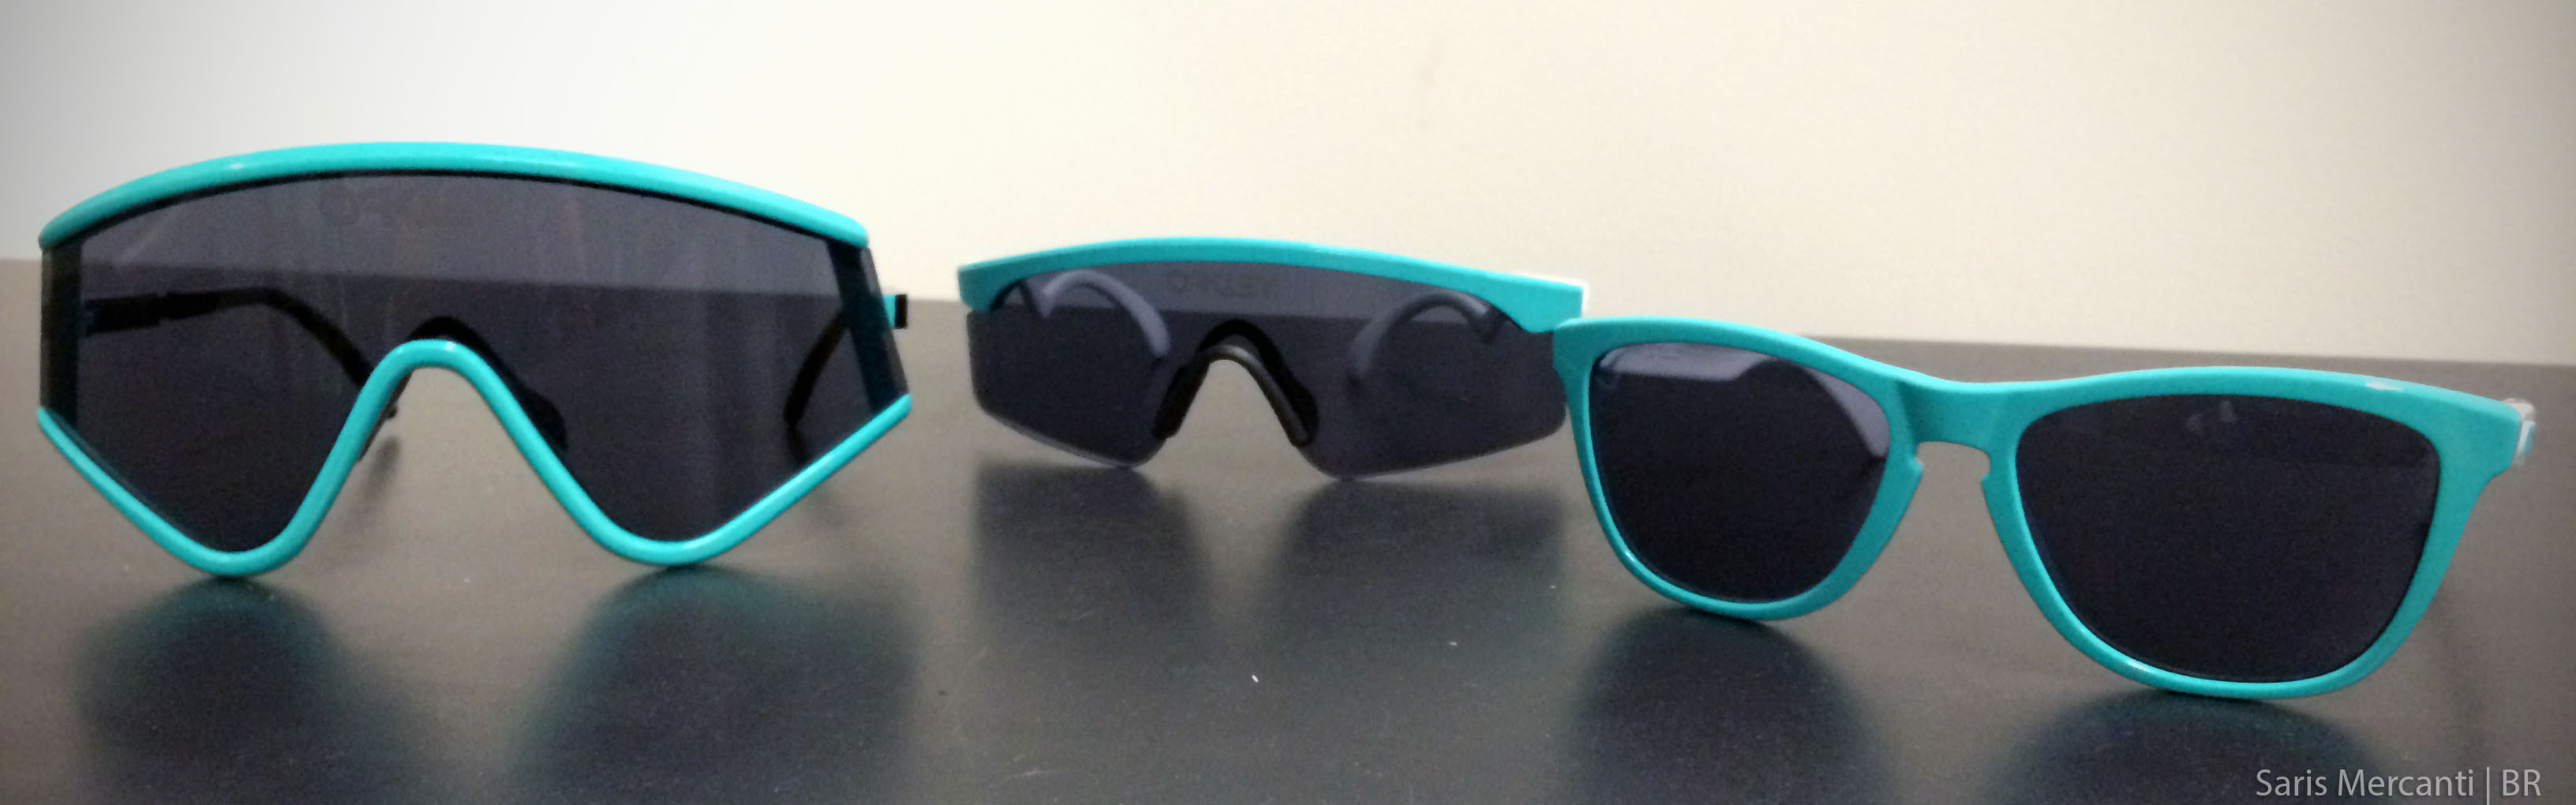 oakley alien sunglasses